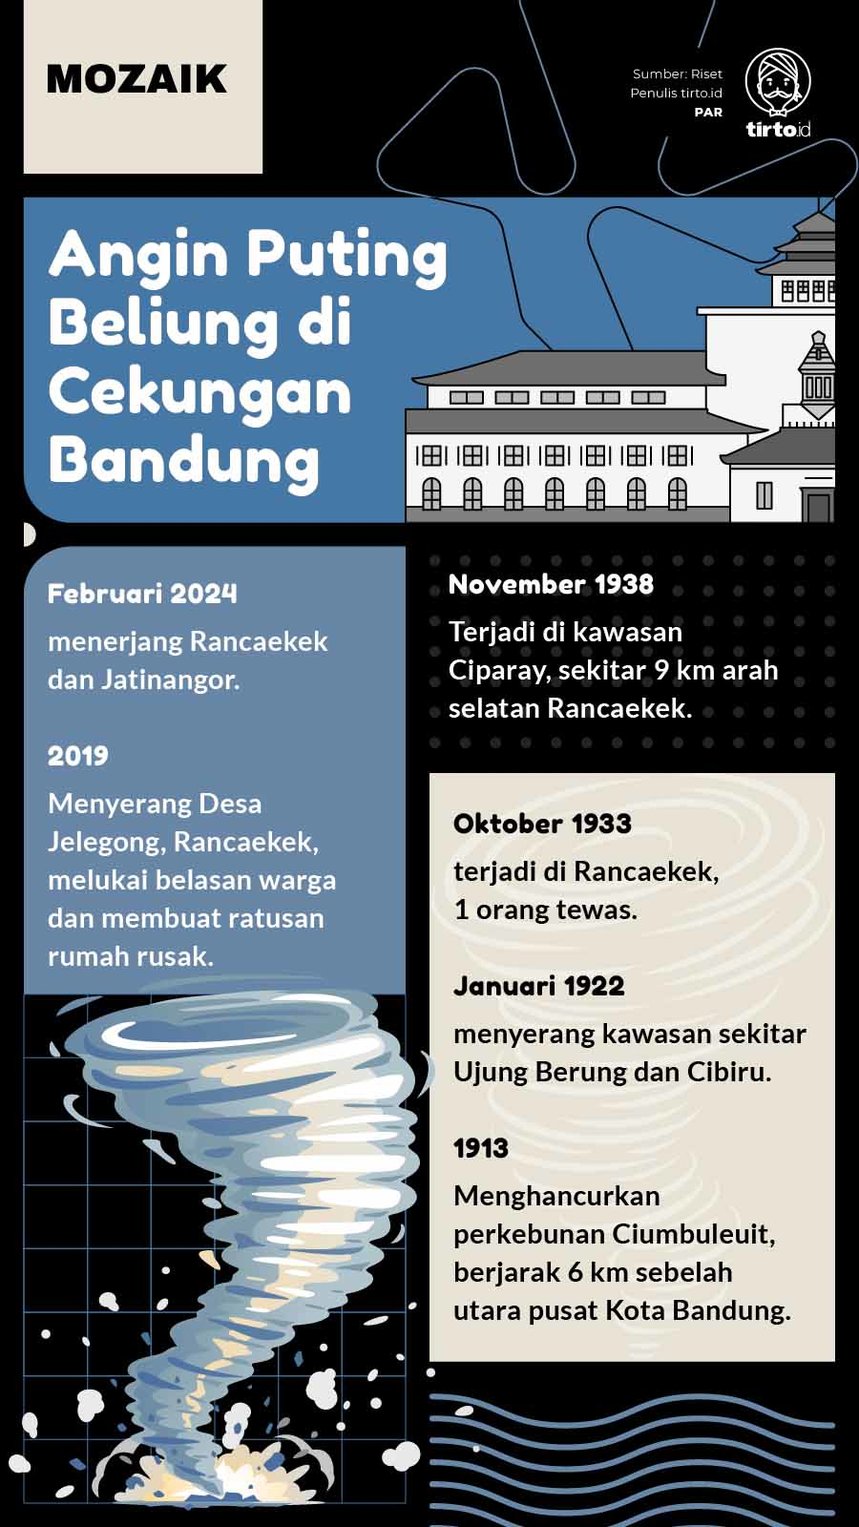 Infografik Mozaik Angin Puting Beliung Bandung